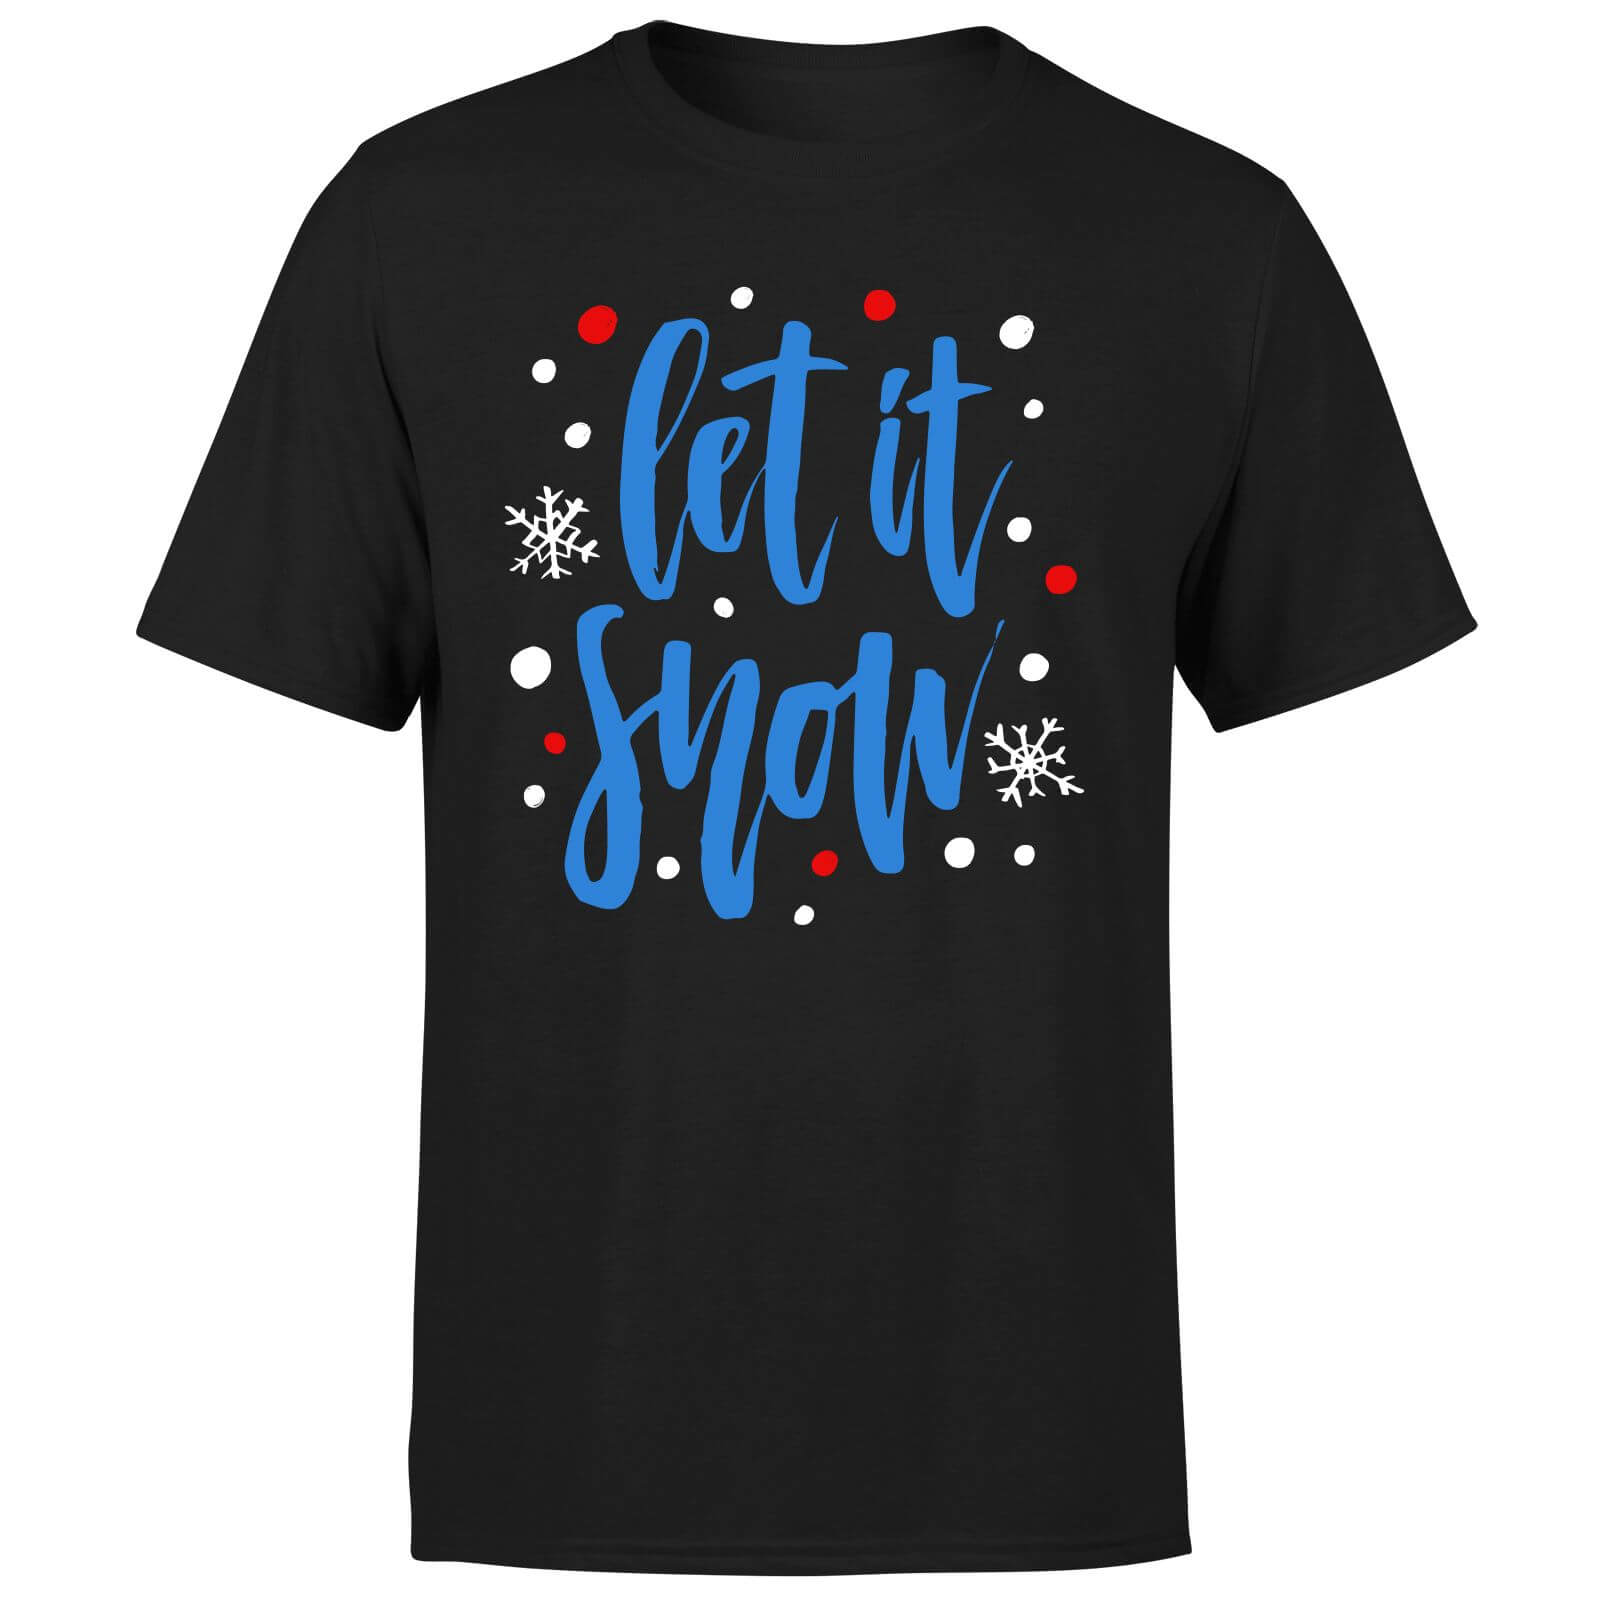 Let it Snow T-Shirt - Black - S - Black